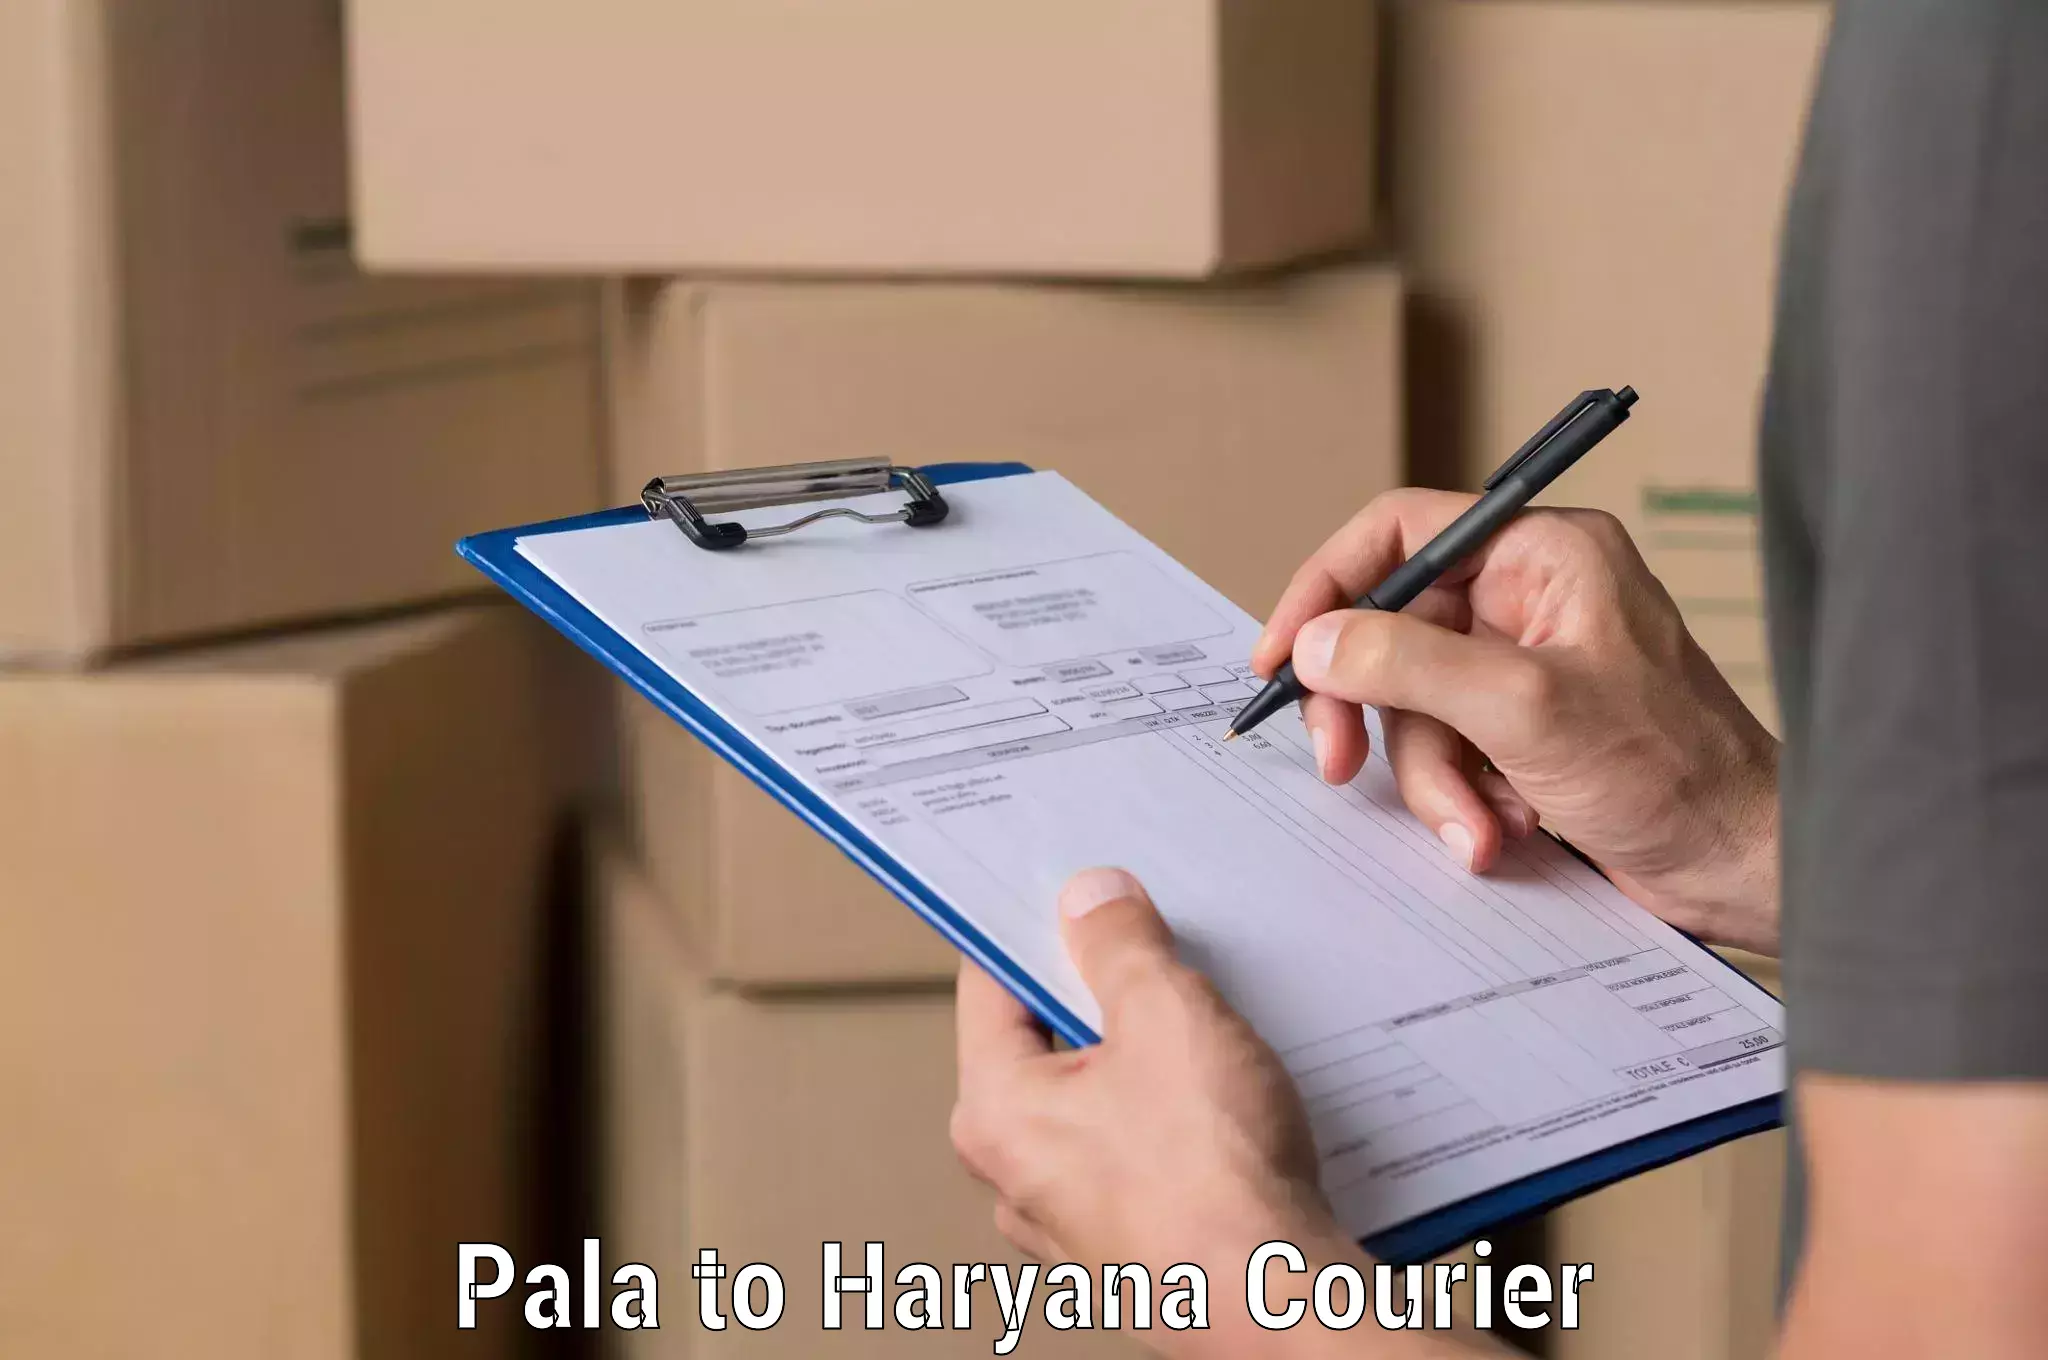 Express logistics providers Pala to Haryana